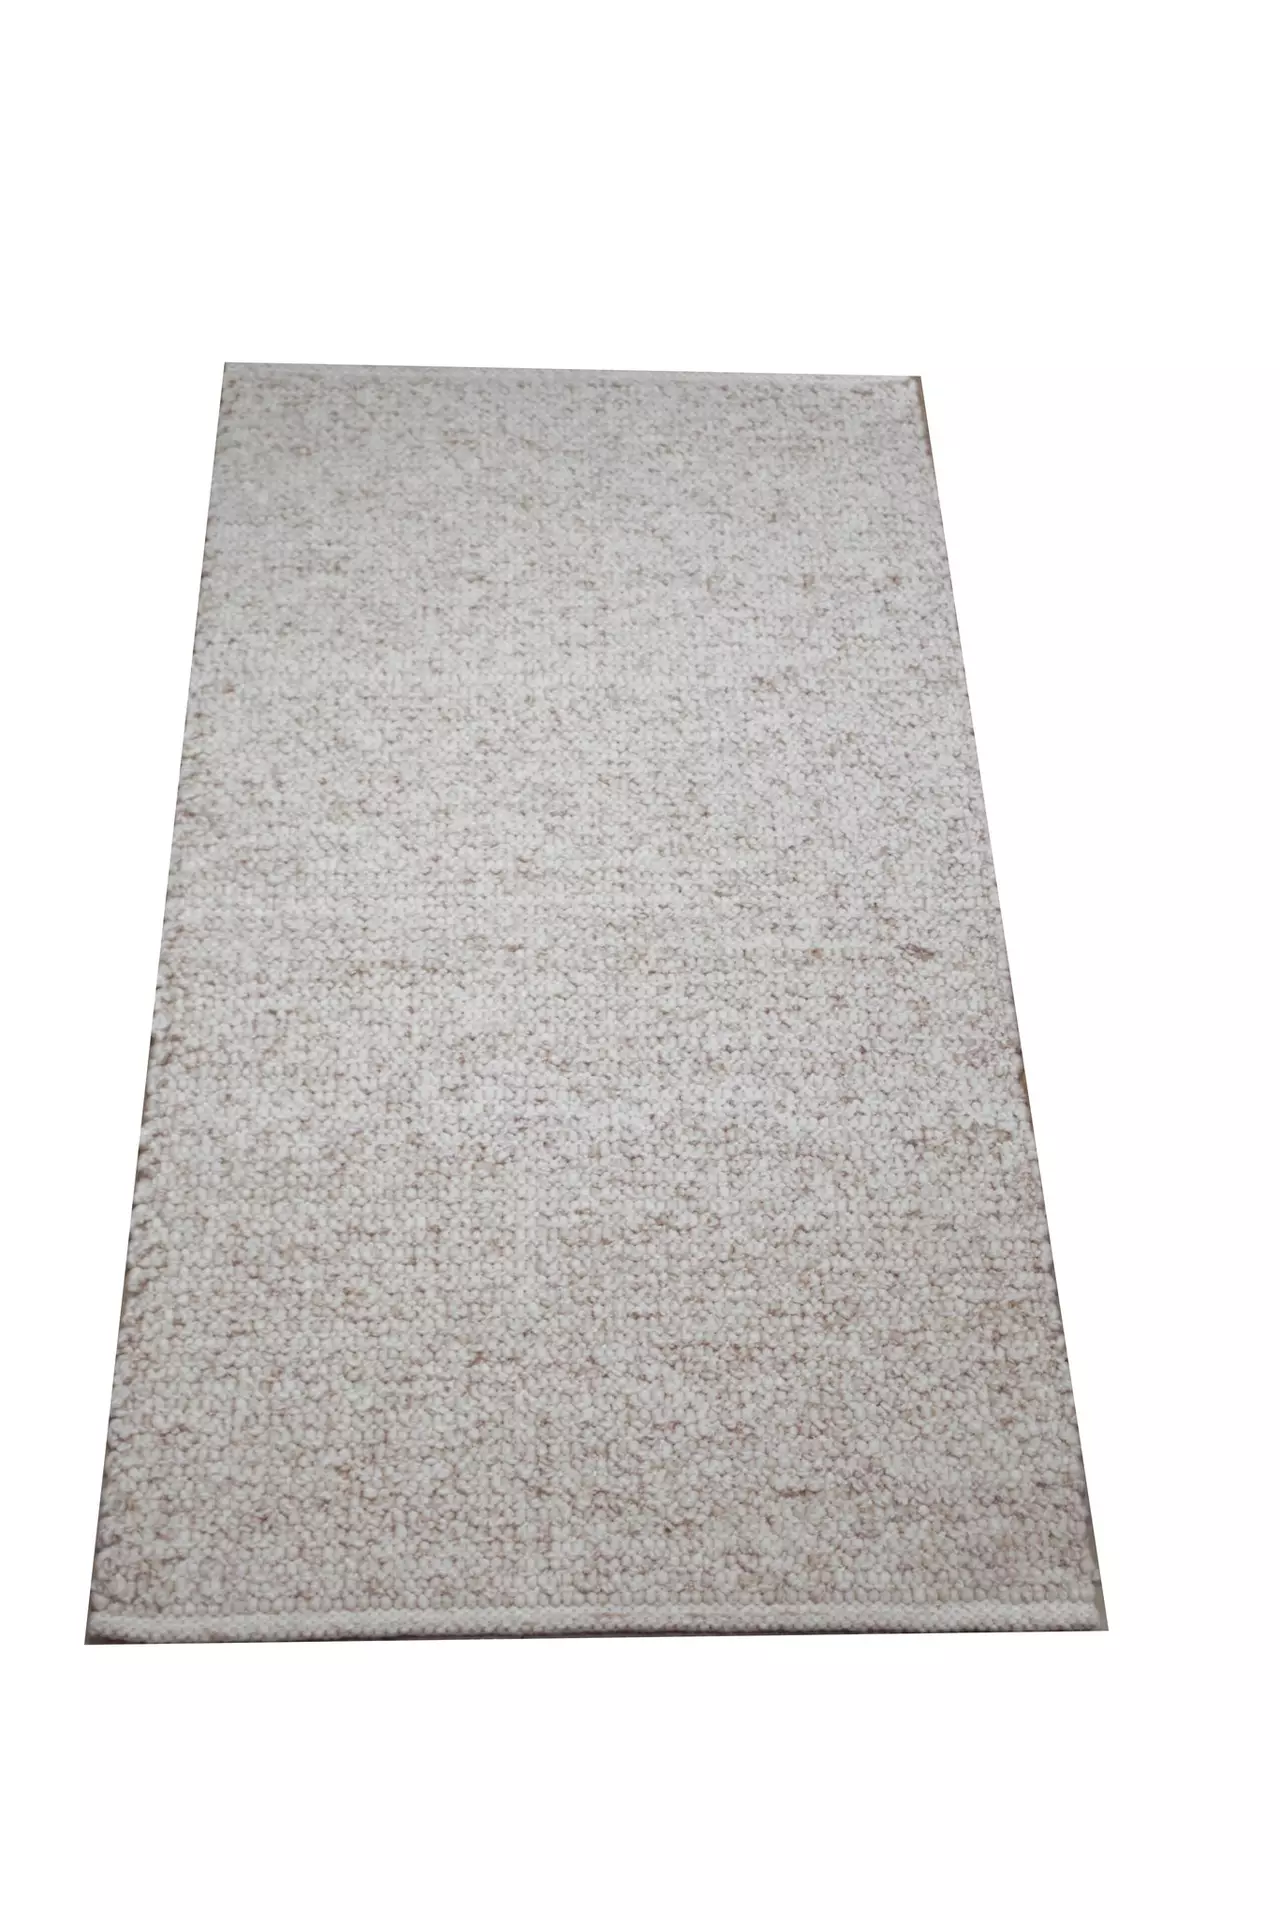 Handwebteppich Weitblick Polaris Allgäuer Teppichmanufaktur Textil 130 x 200 cm